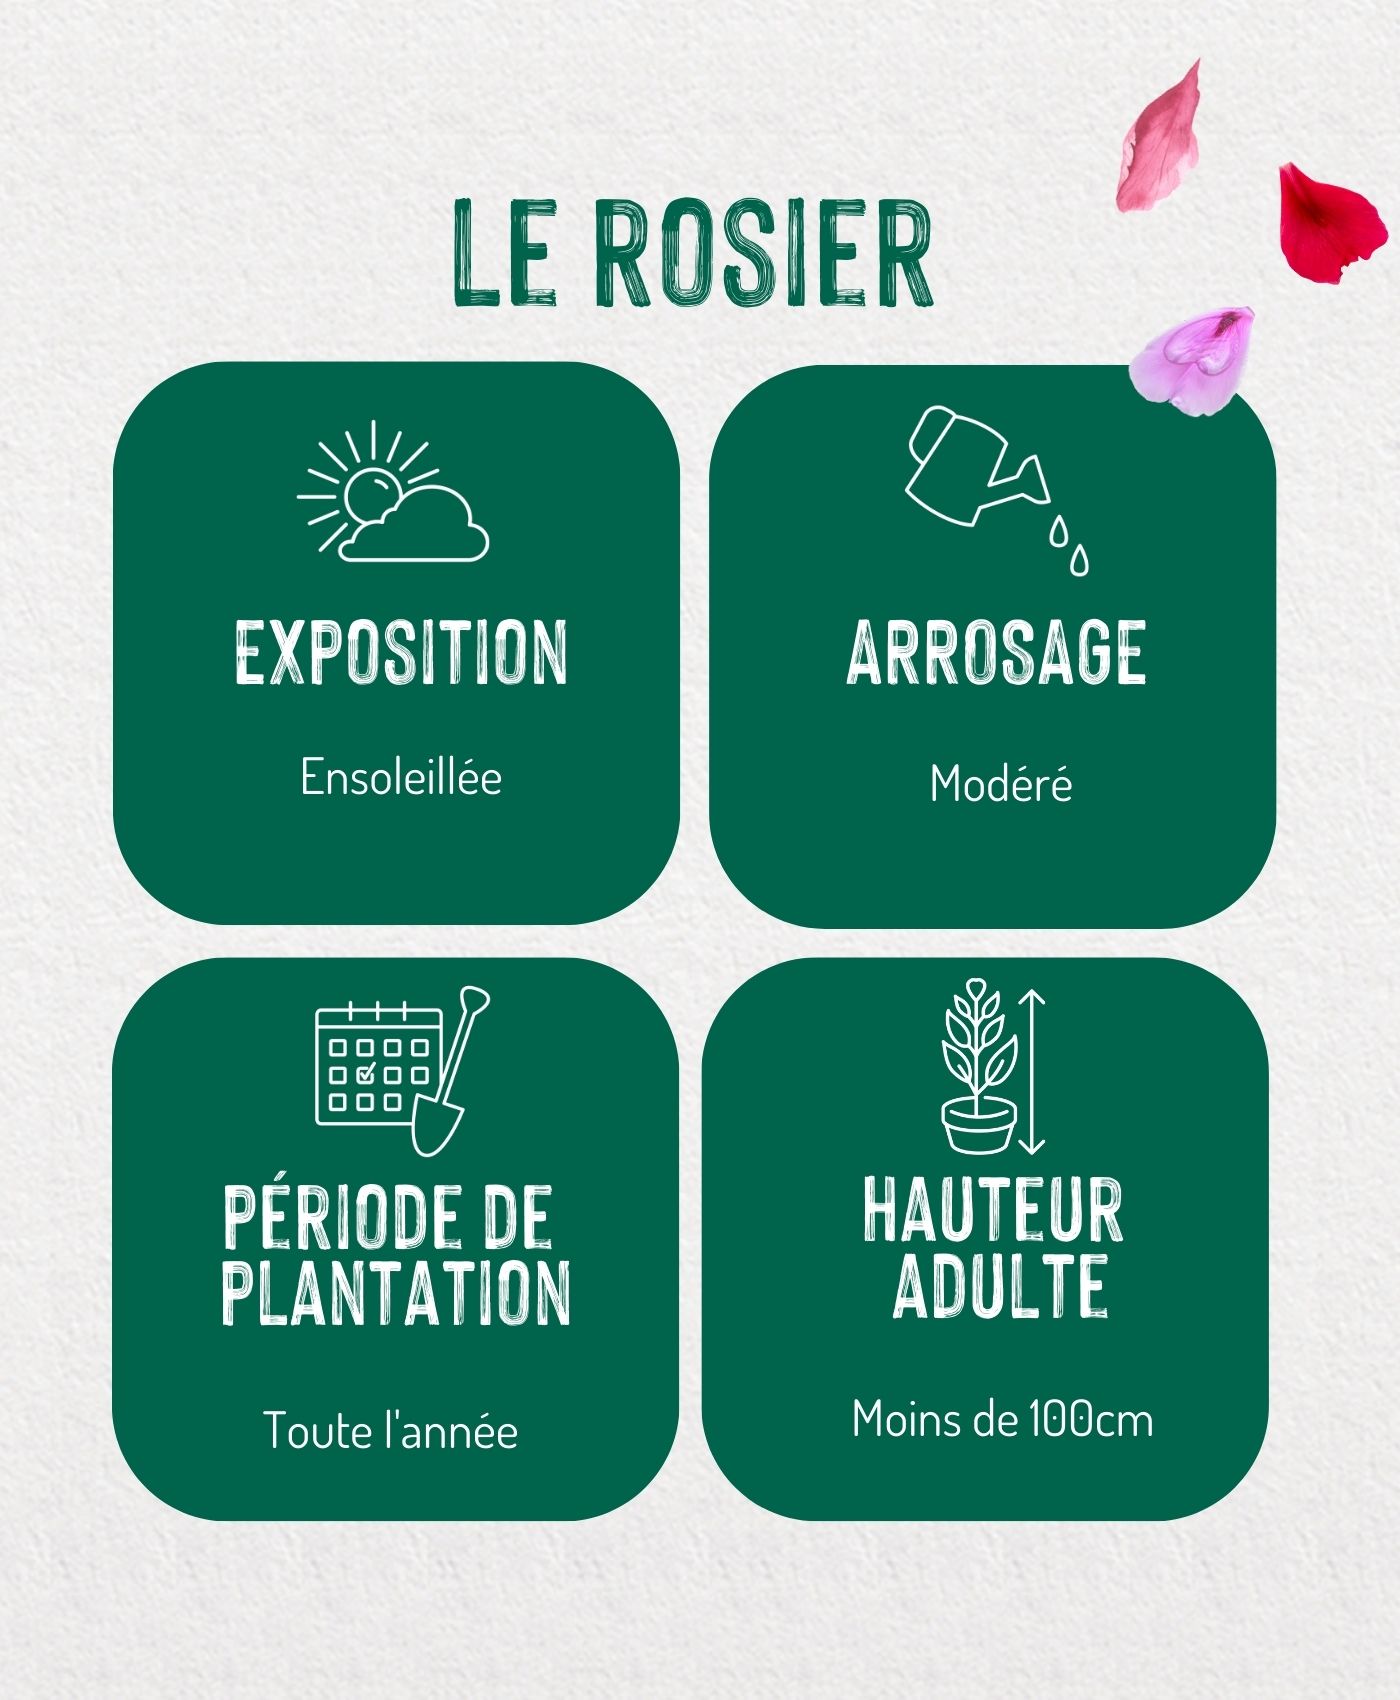 Une infographie présentant les étapes d'entretien du rosier